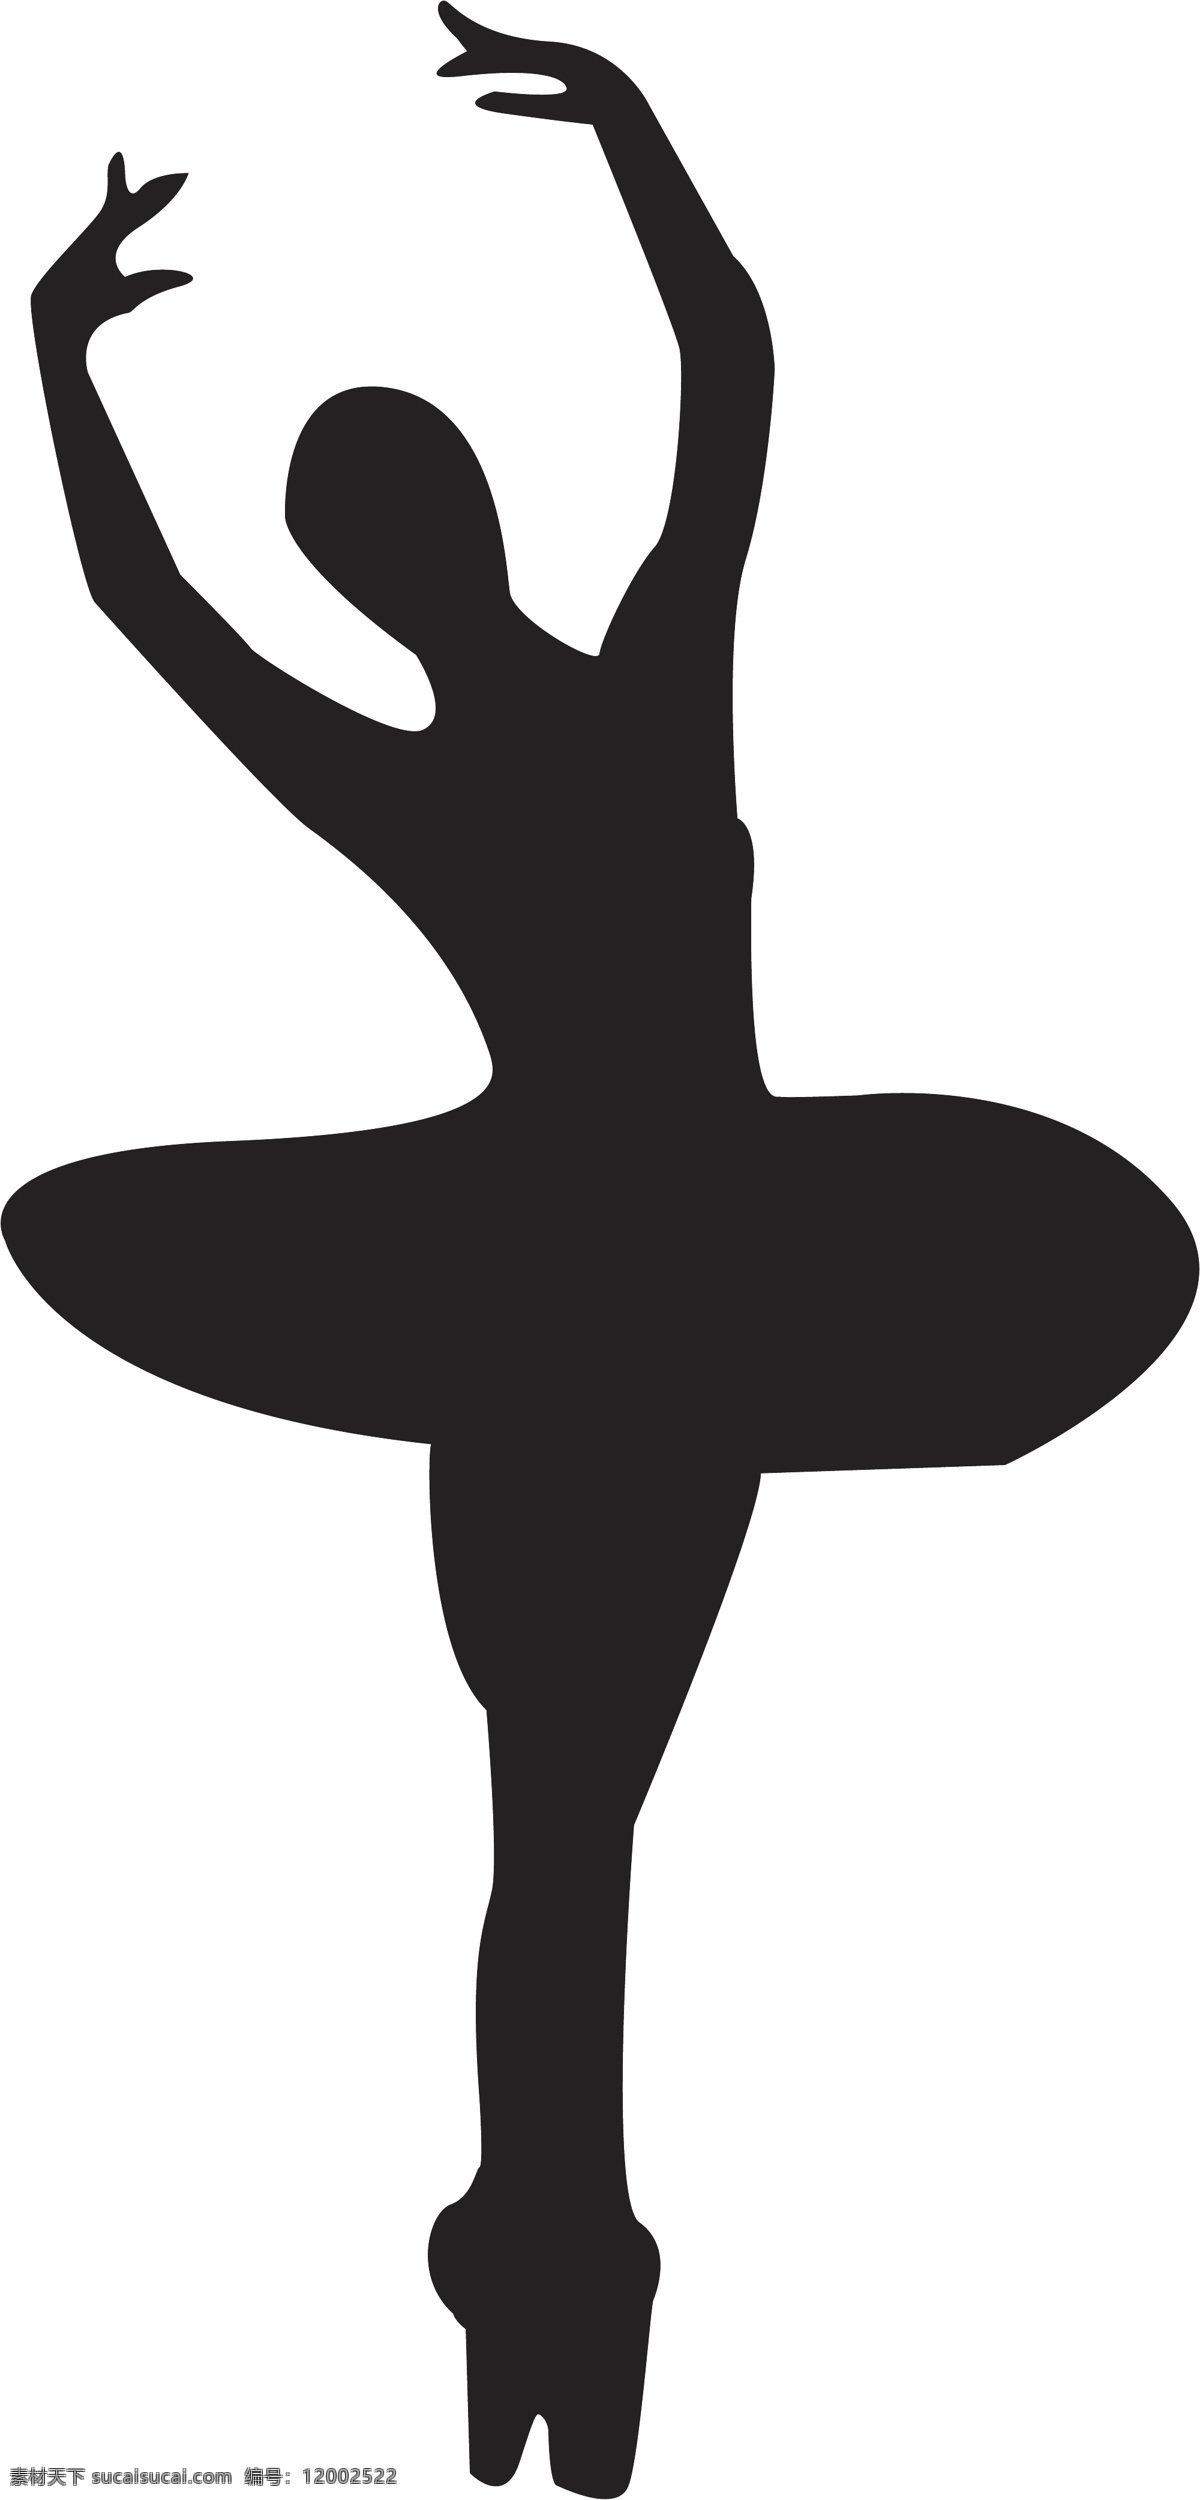 舞蹈班 跳舞 女孩 剪影 舞蹈训练 人物 伸展 动作 图案 宣传 手绘 海报 舞蹈 装饰 轮廓 黑白